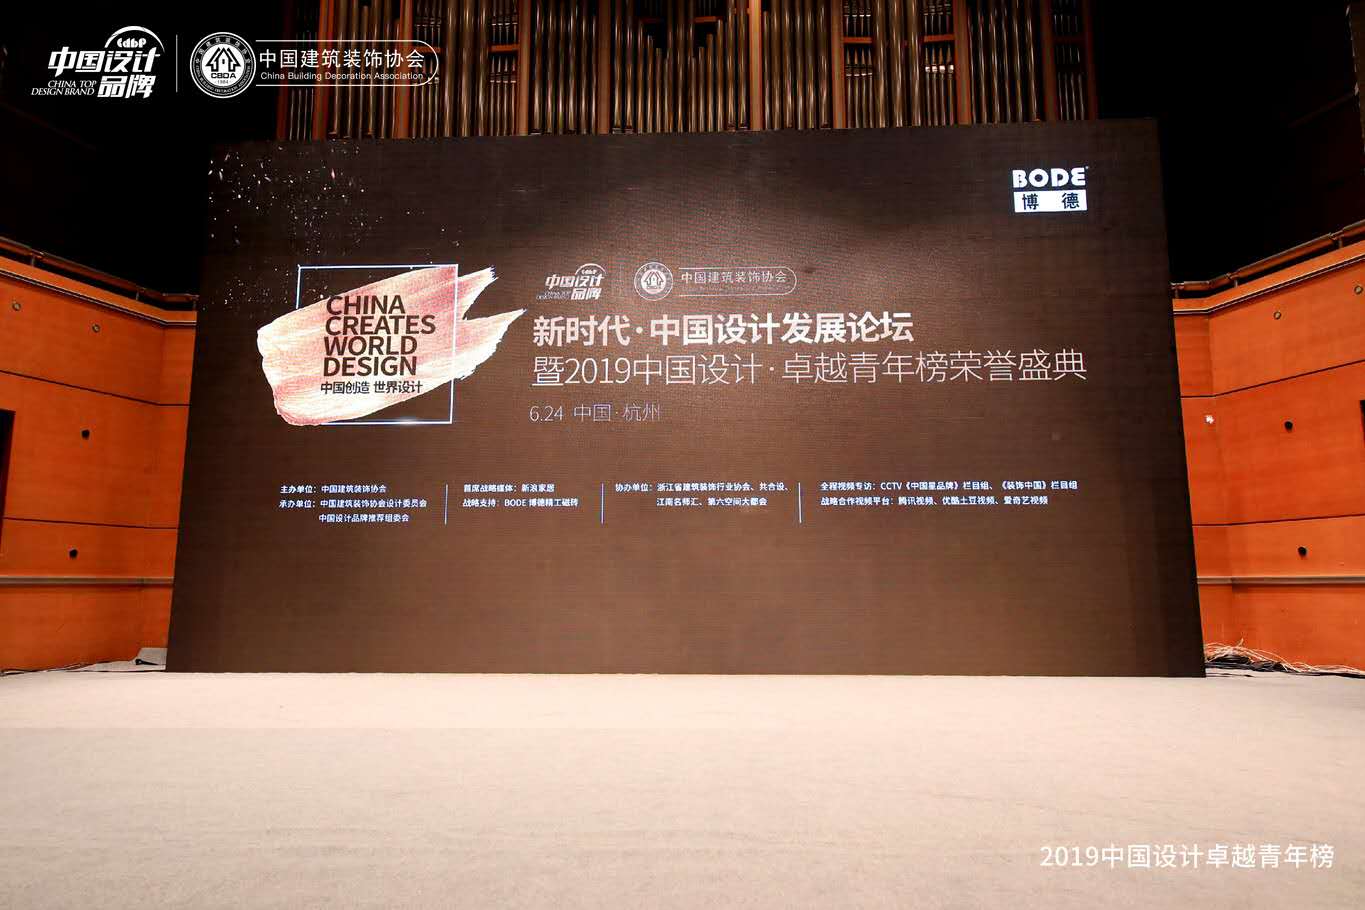 下一篇：千名设计师齐聚杭州见证中国设计•卓越青年榜荣耀启动